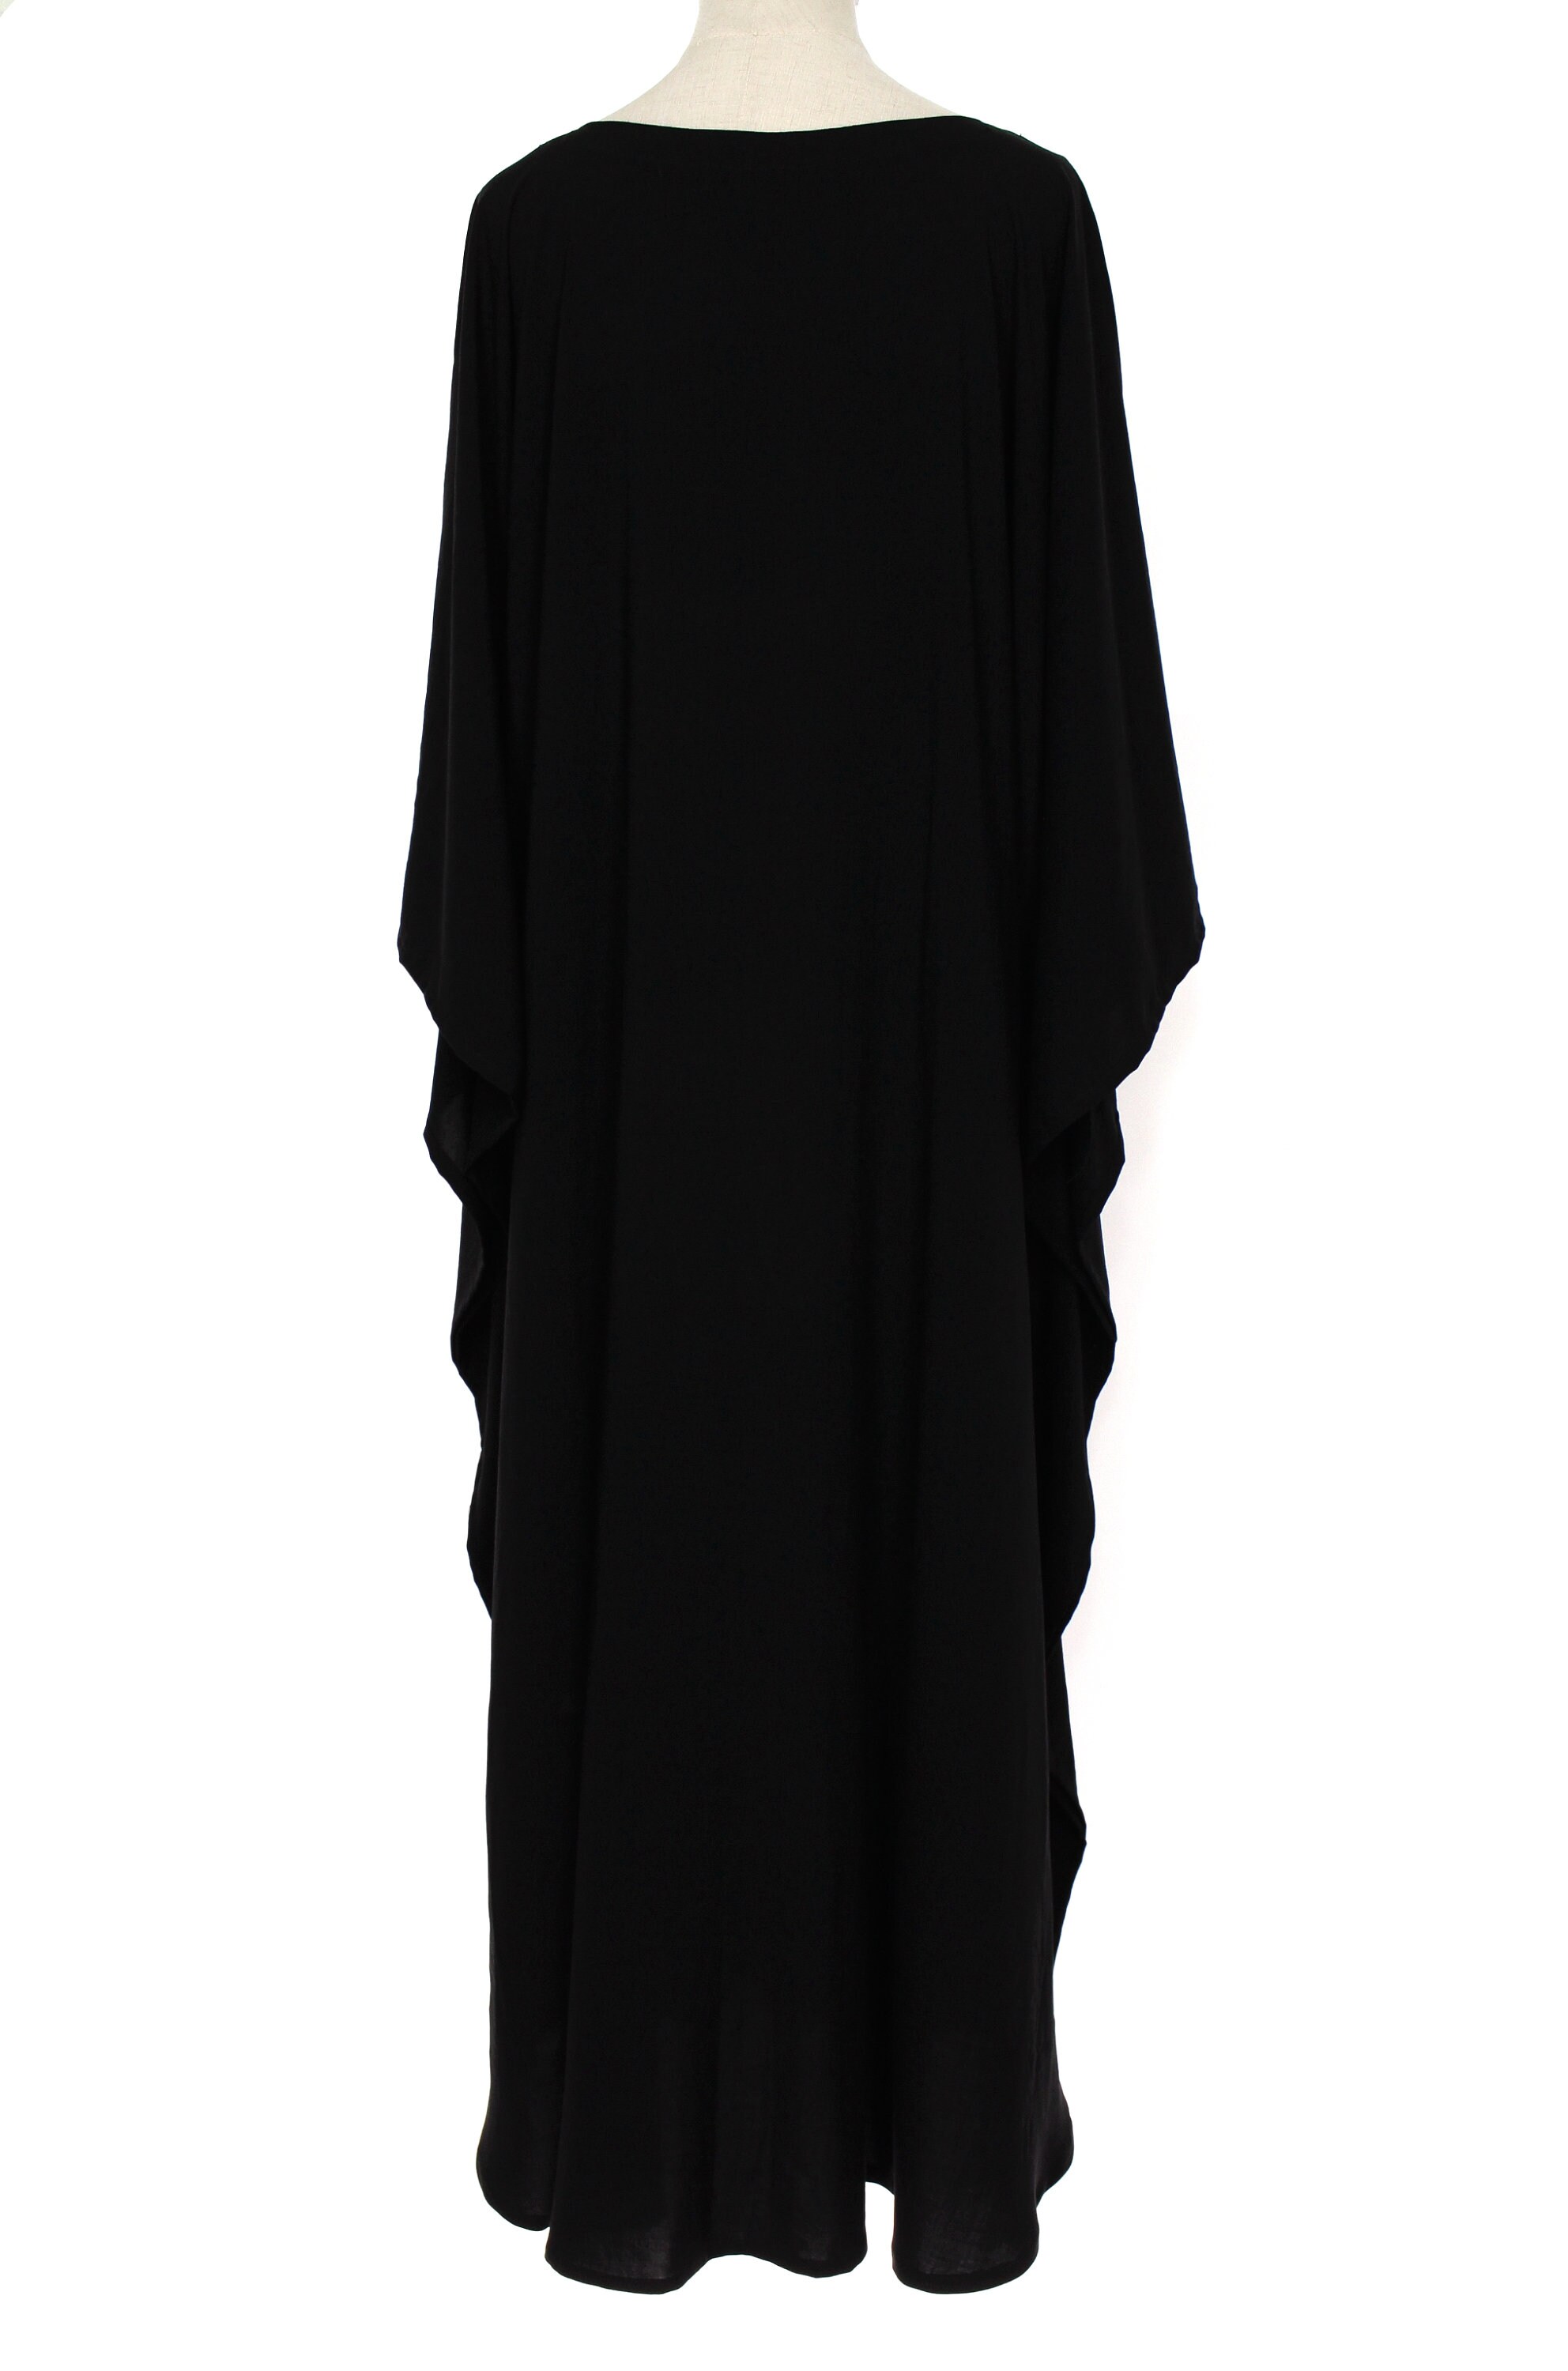 Black Caftan Boho Oversized Lounge Dress Plus One Size 4X 5X | Etsy